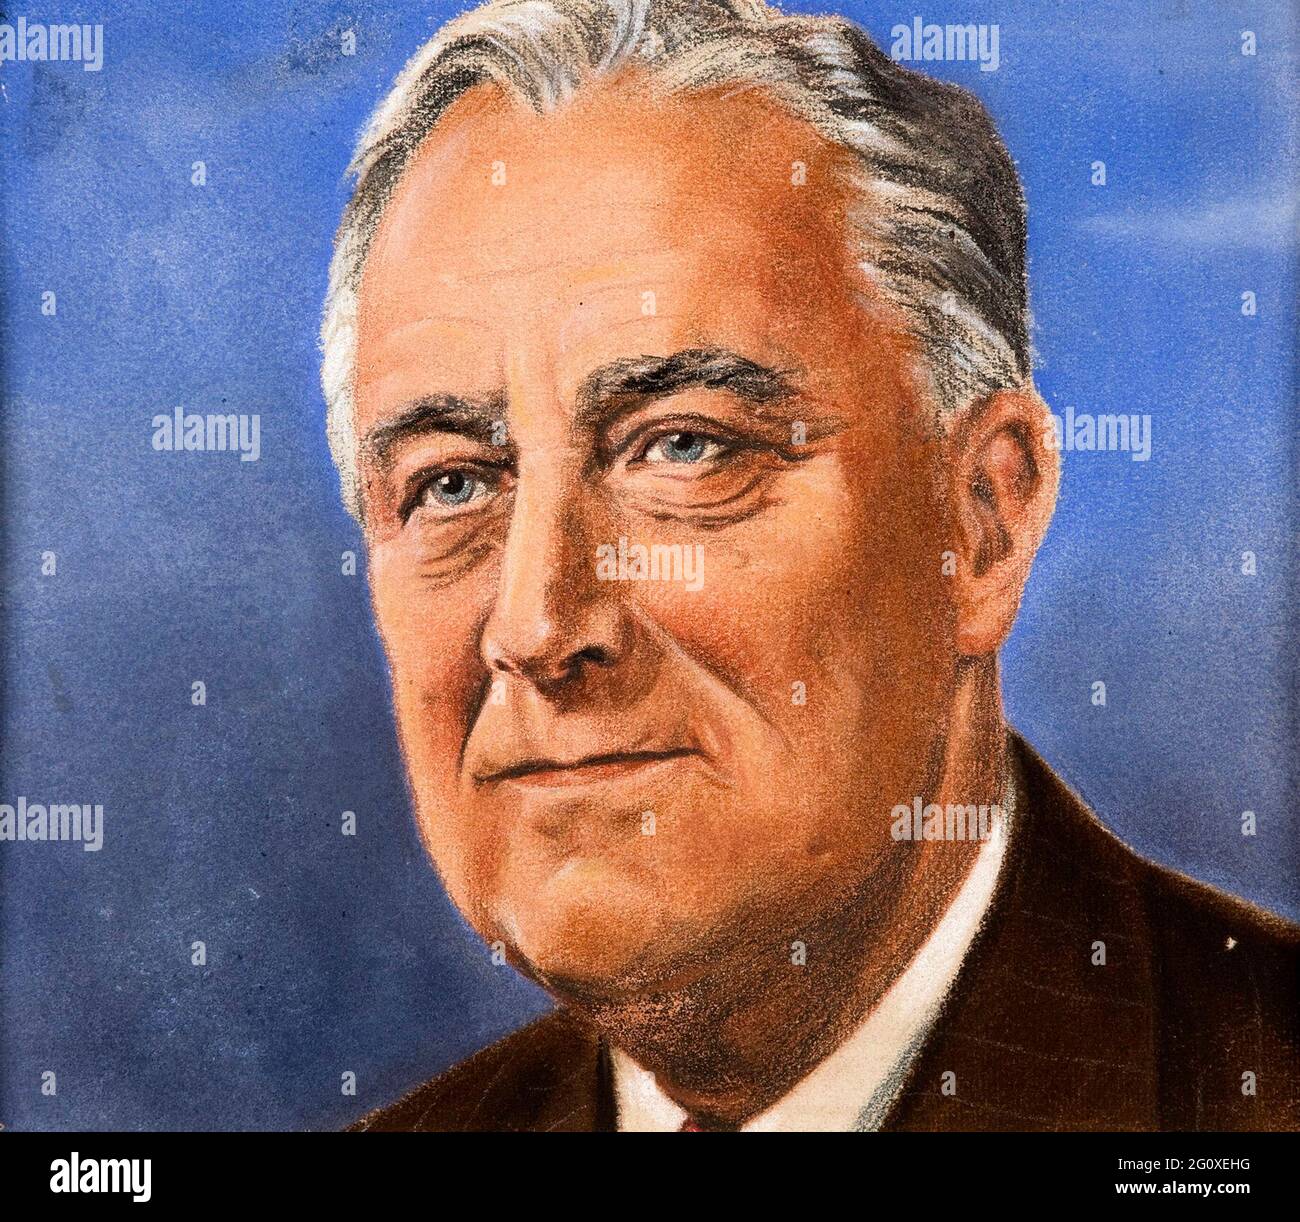 Un ritratto di Franklin Roosevelt disegnato per il Ministero dell'informazione britannico dall'artista austriaco William Timym Foto Stock